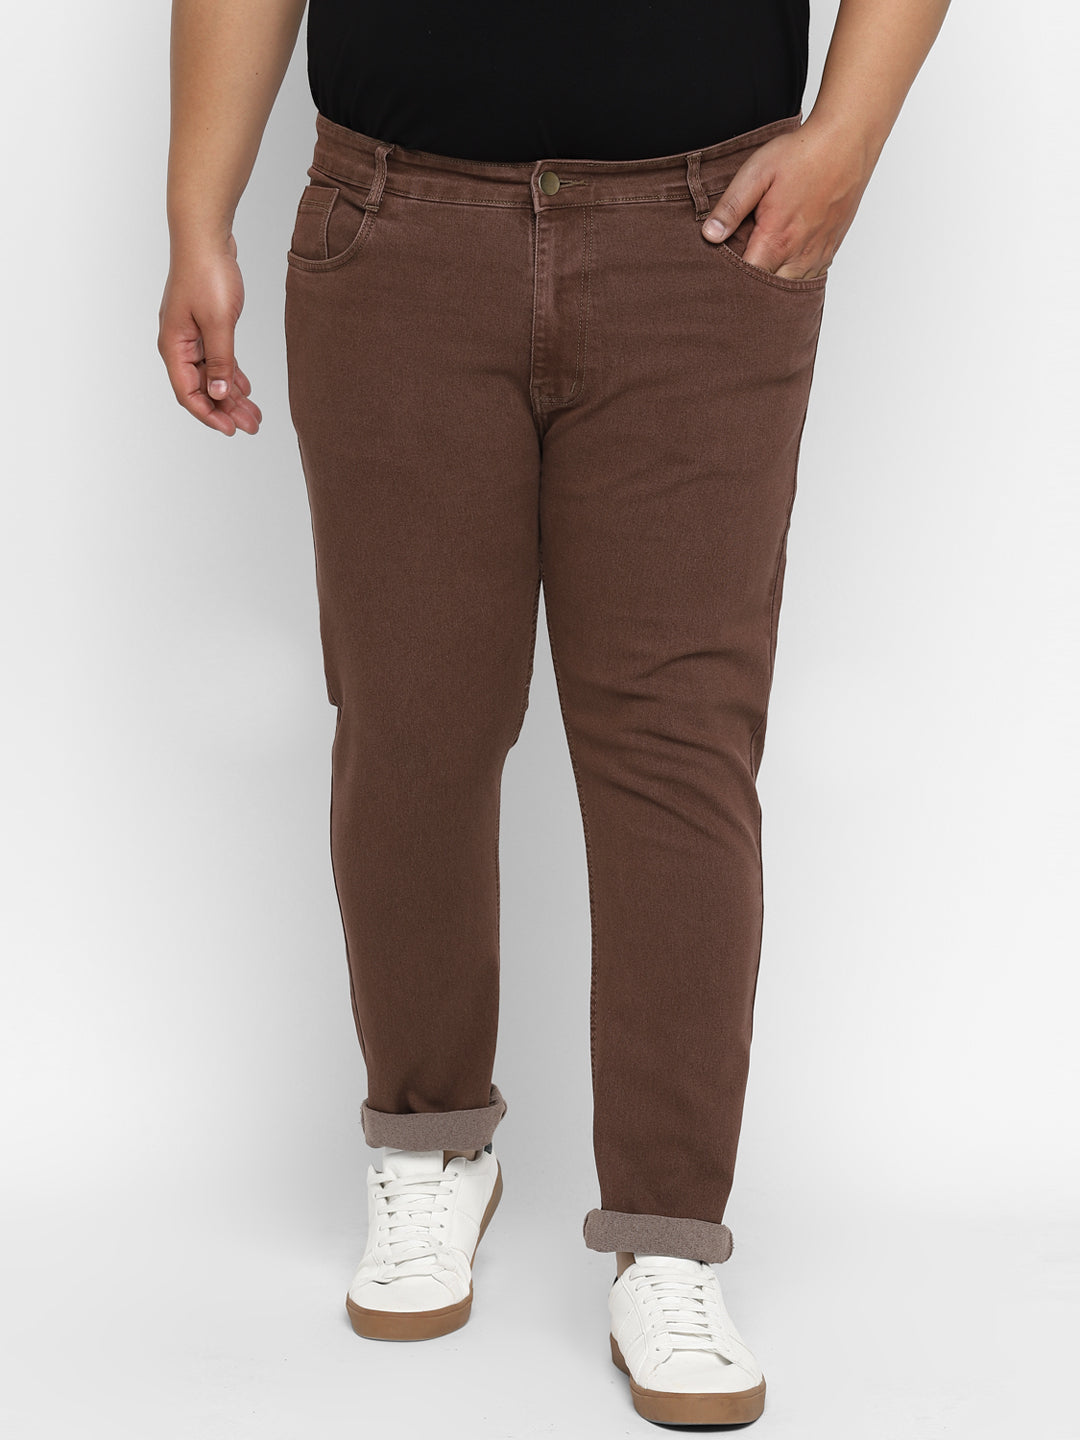 Men's Brown Regular Fit Denim Jeans Stretchable